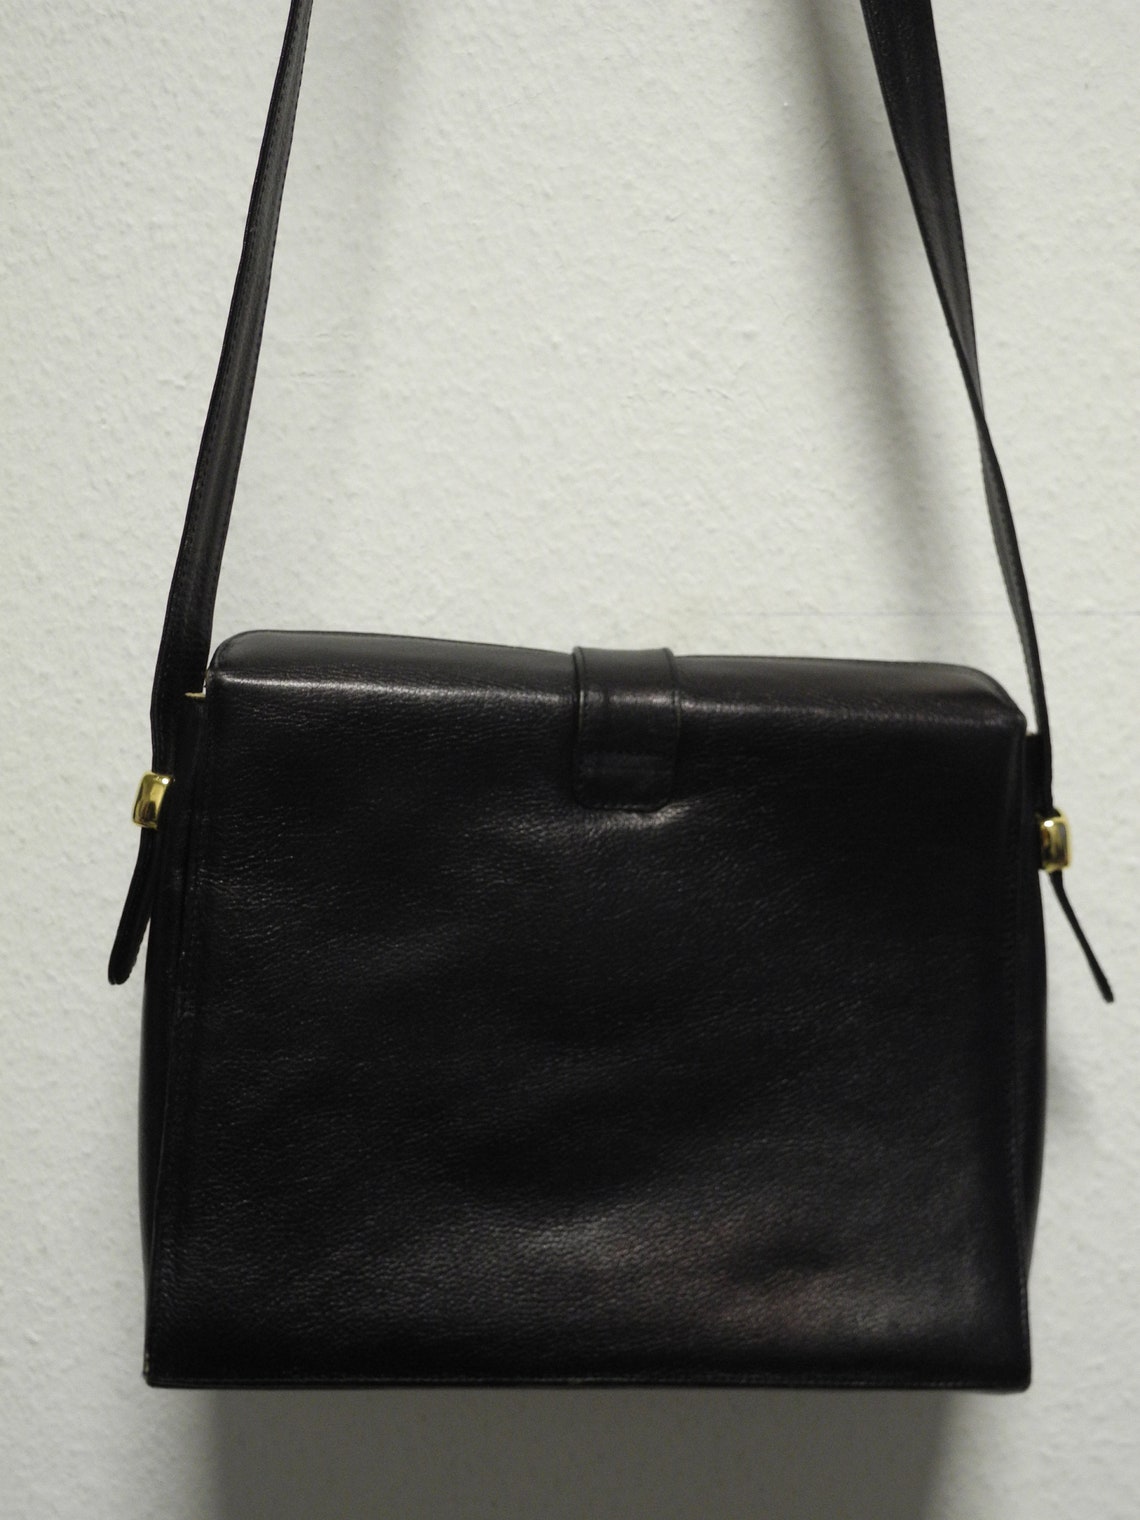 Giudi Vintage Leather Shoulder Bag Black Blue Cream Lining | Etsy